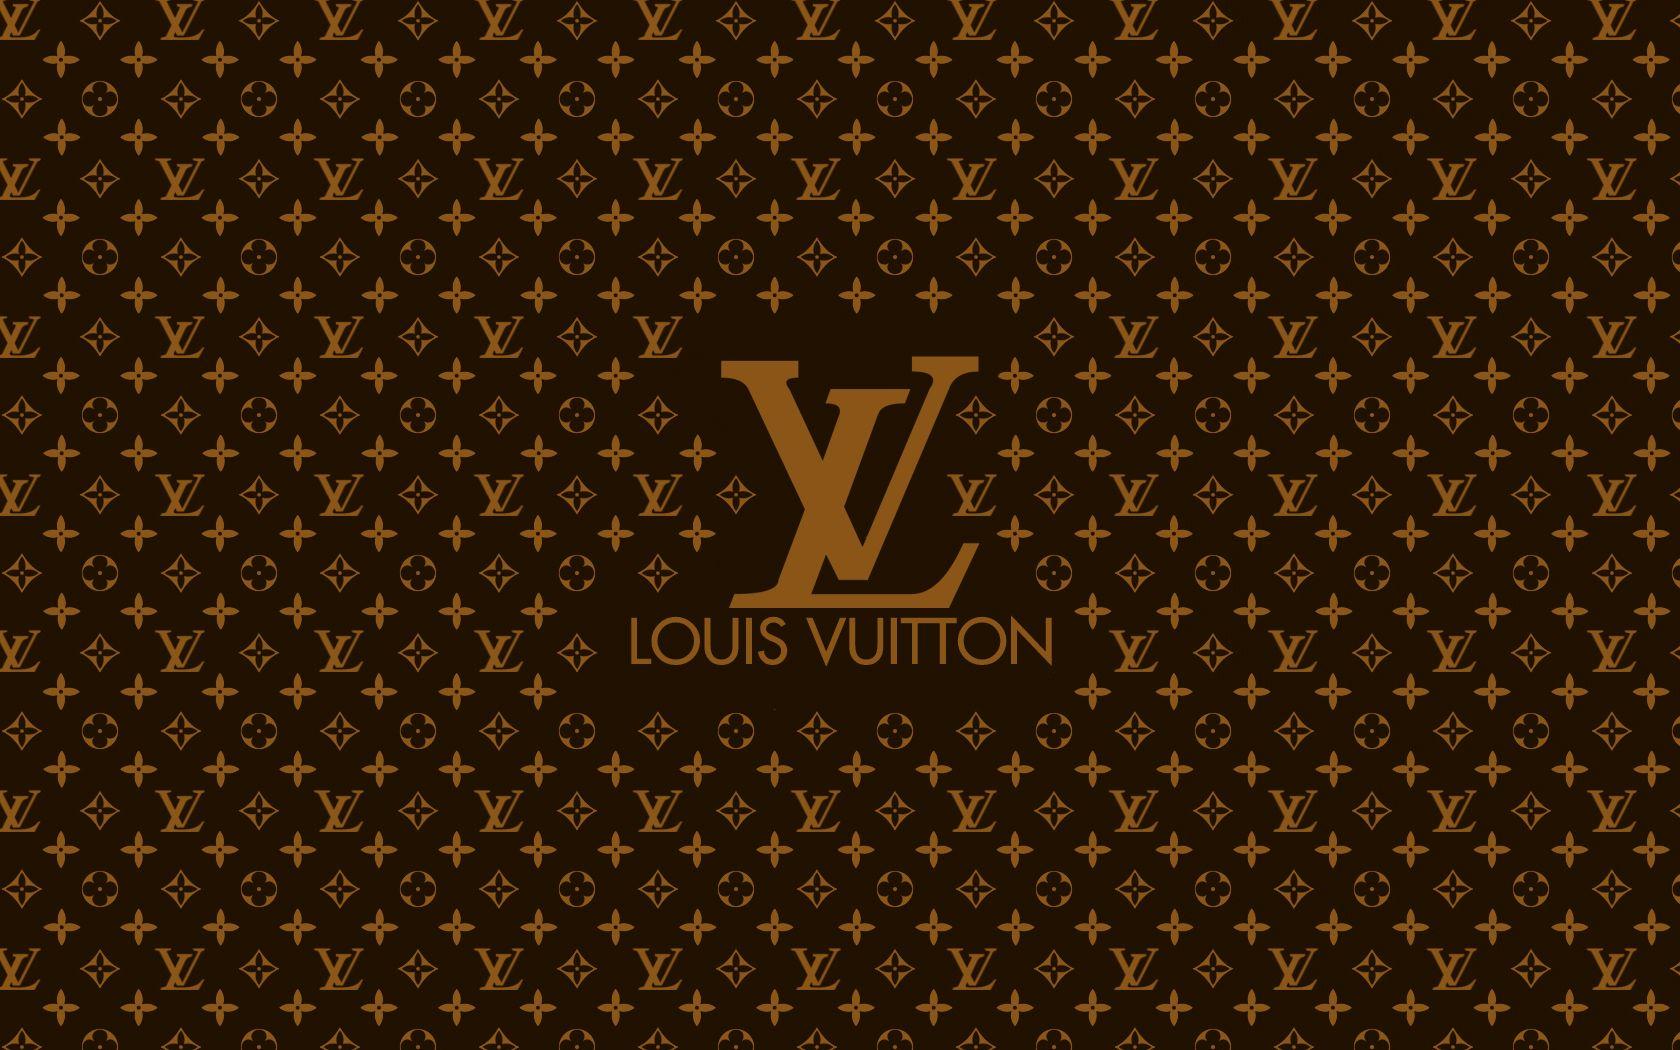 Louis Vuitton Wallpaper 16080 1680x1050 px